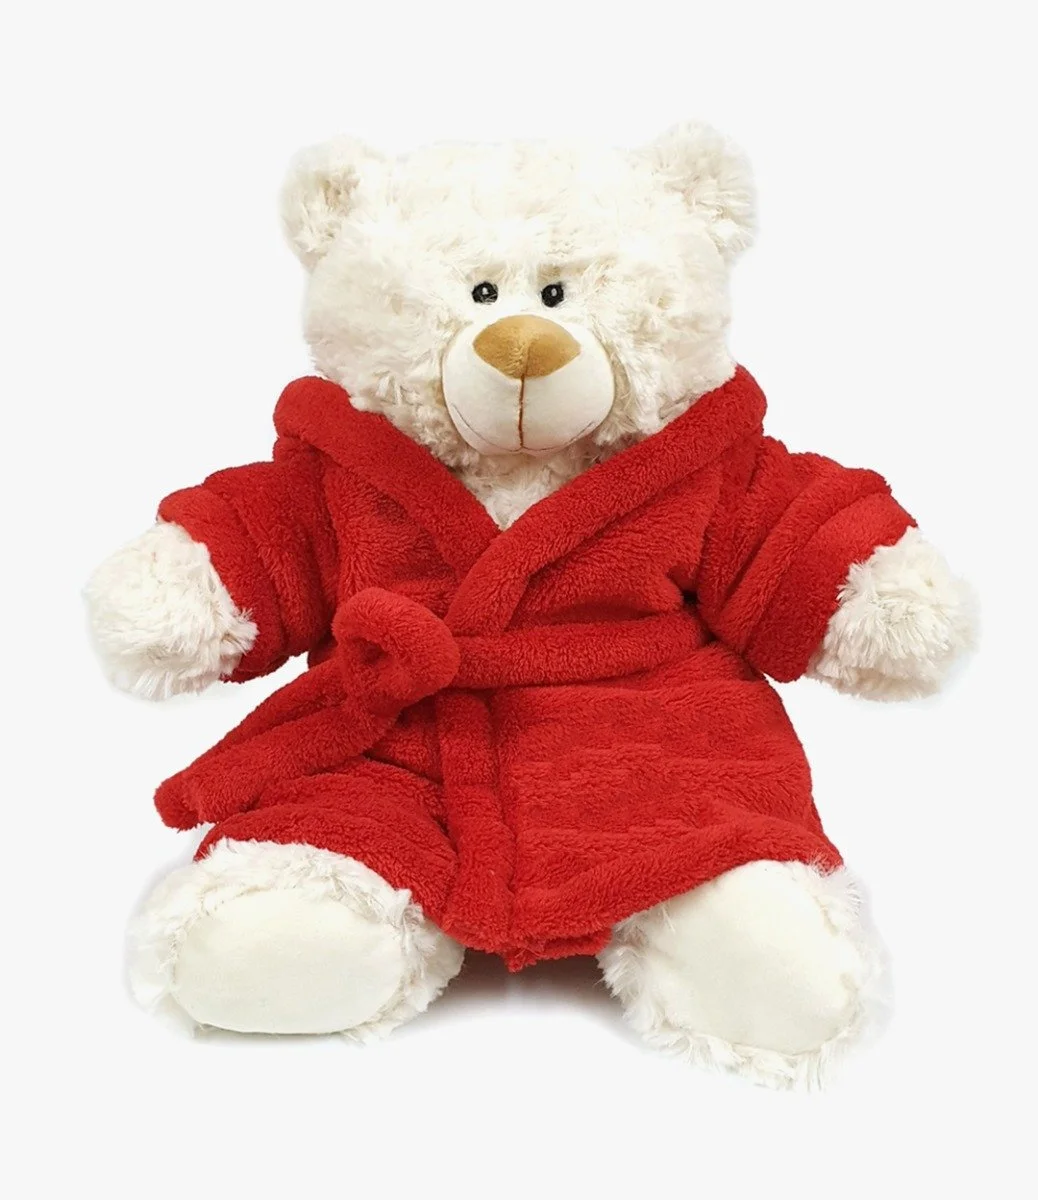 Cream Teddy with Red Bathrobe 38cm by Fay Lawson